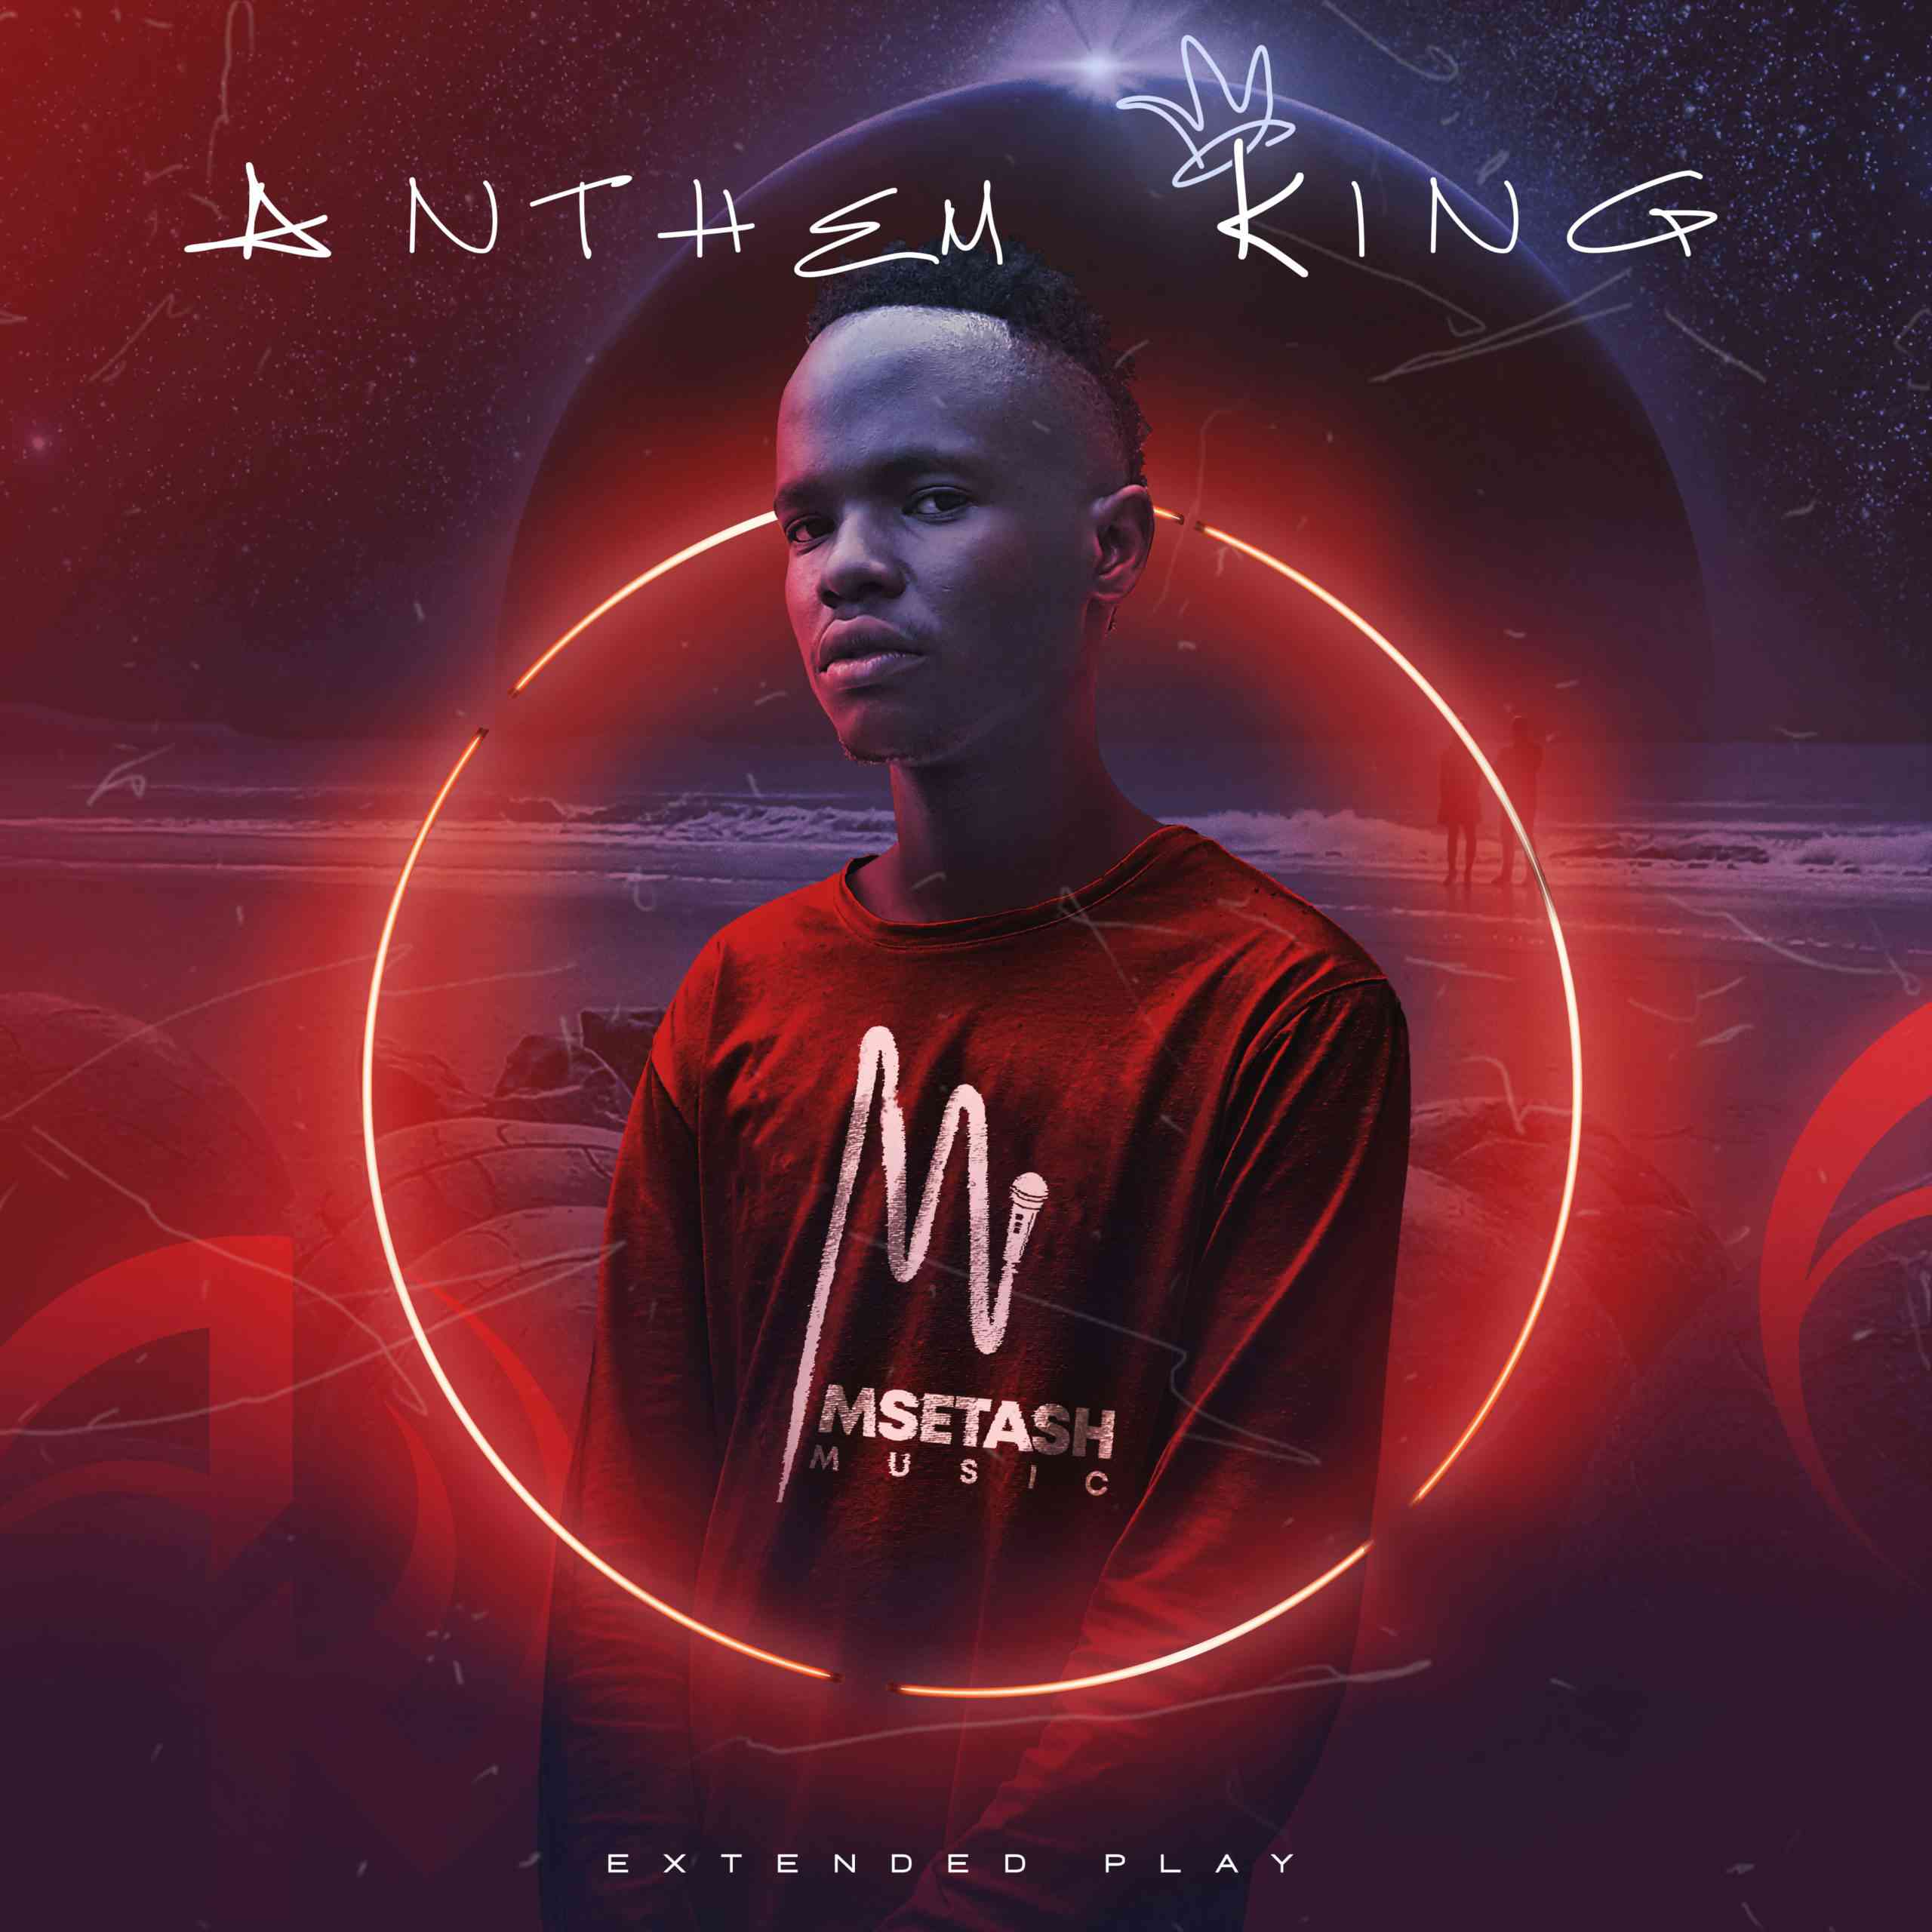 Msetash Anthem King EP